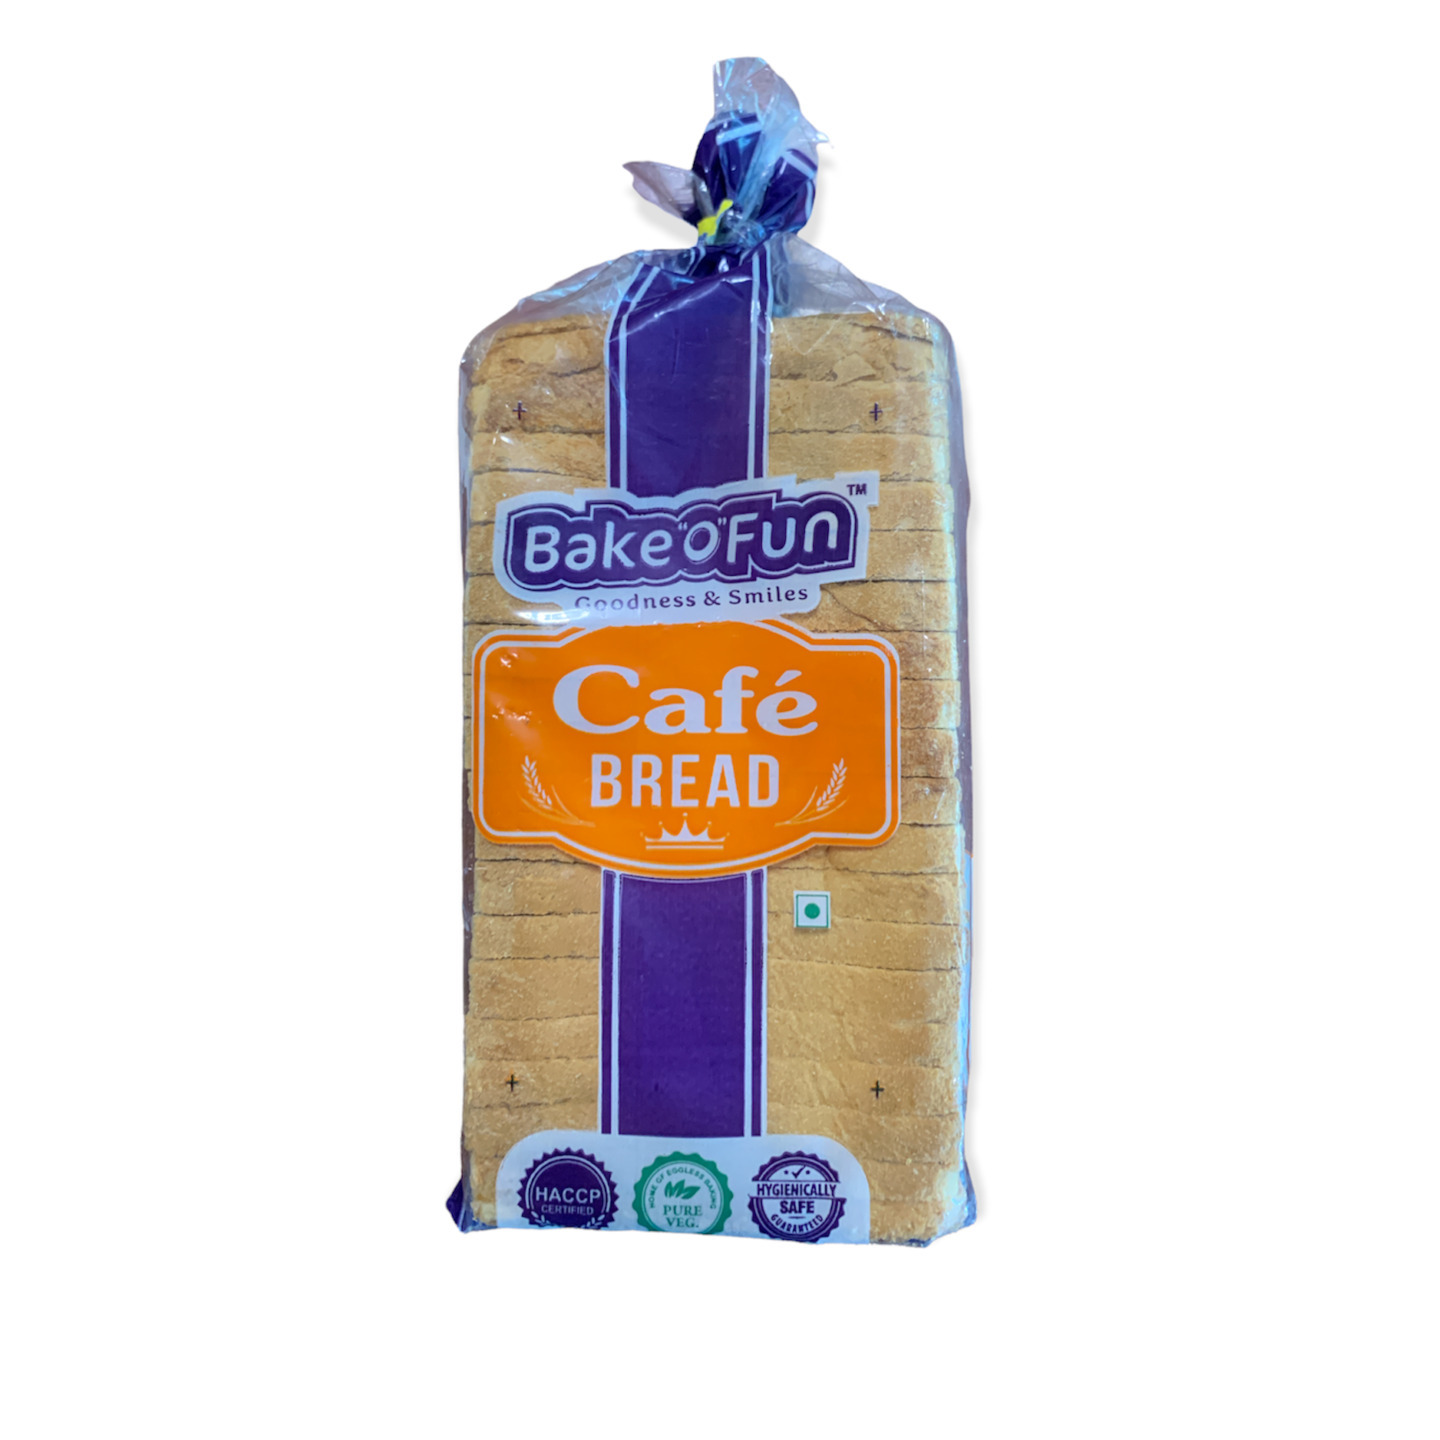 Bakeofun Cafe Bread 